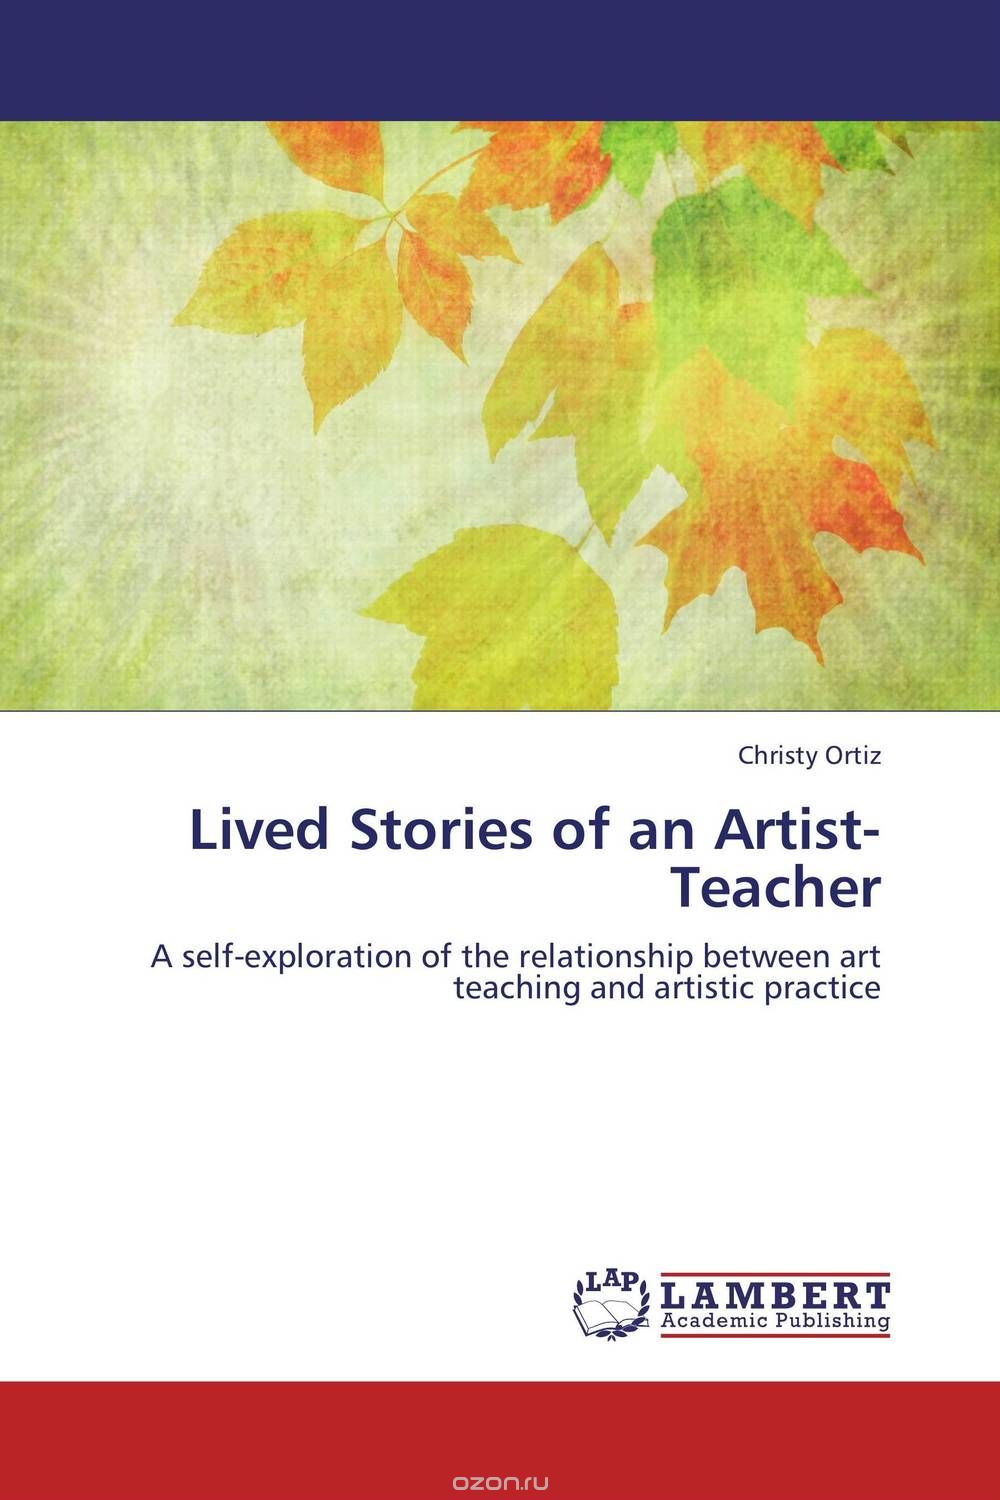 Скачать книгу "Lived Stories of an Artist-Teacher"